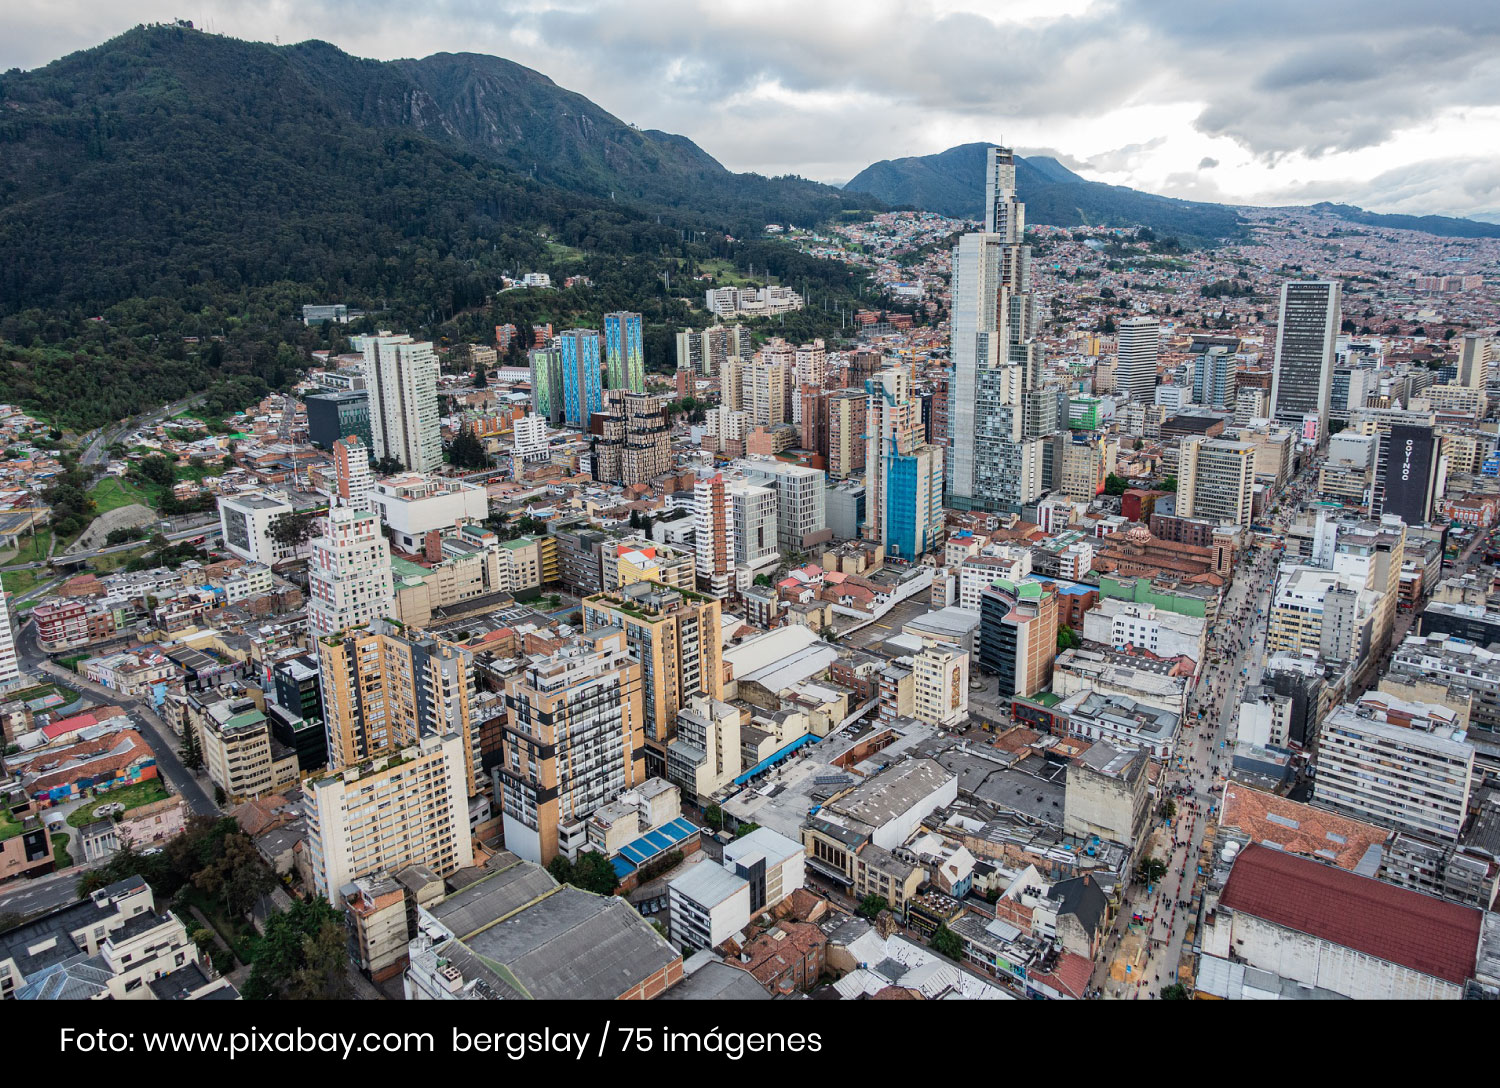 Ciudad de Bogotá - planeación urbana Cider | Uniandes